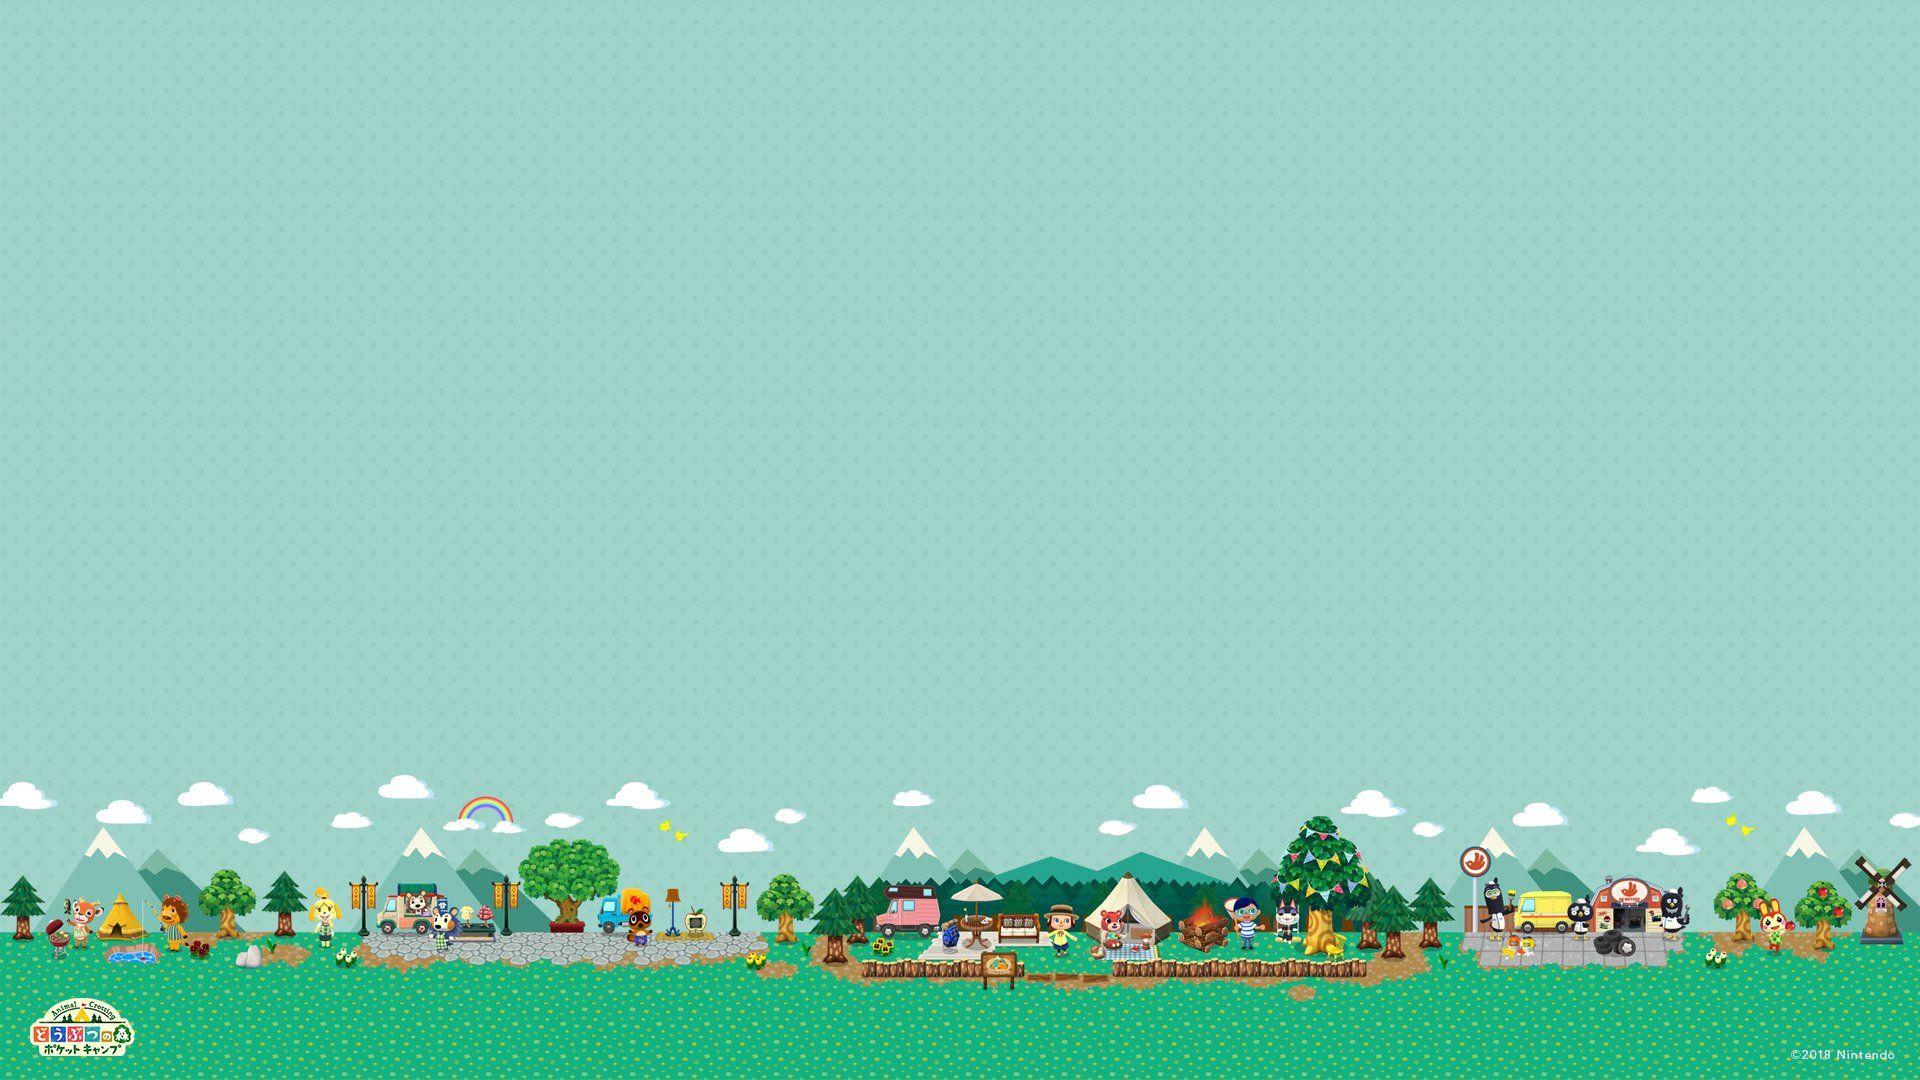 100 Custom Design Tiles For Animal Crossing New Horizons